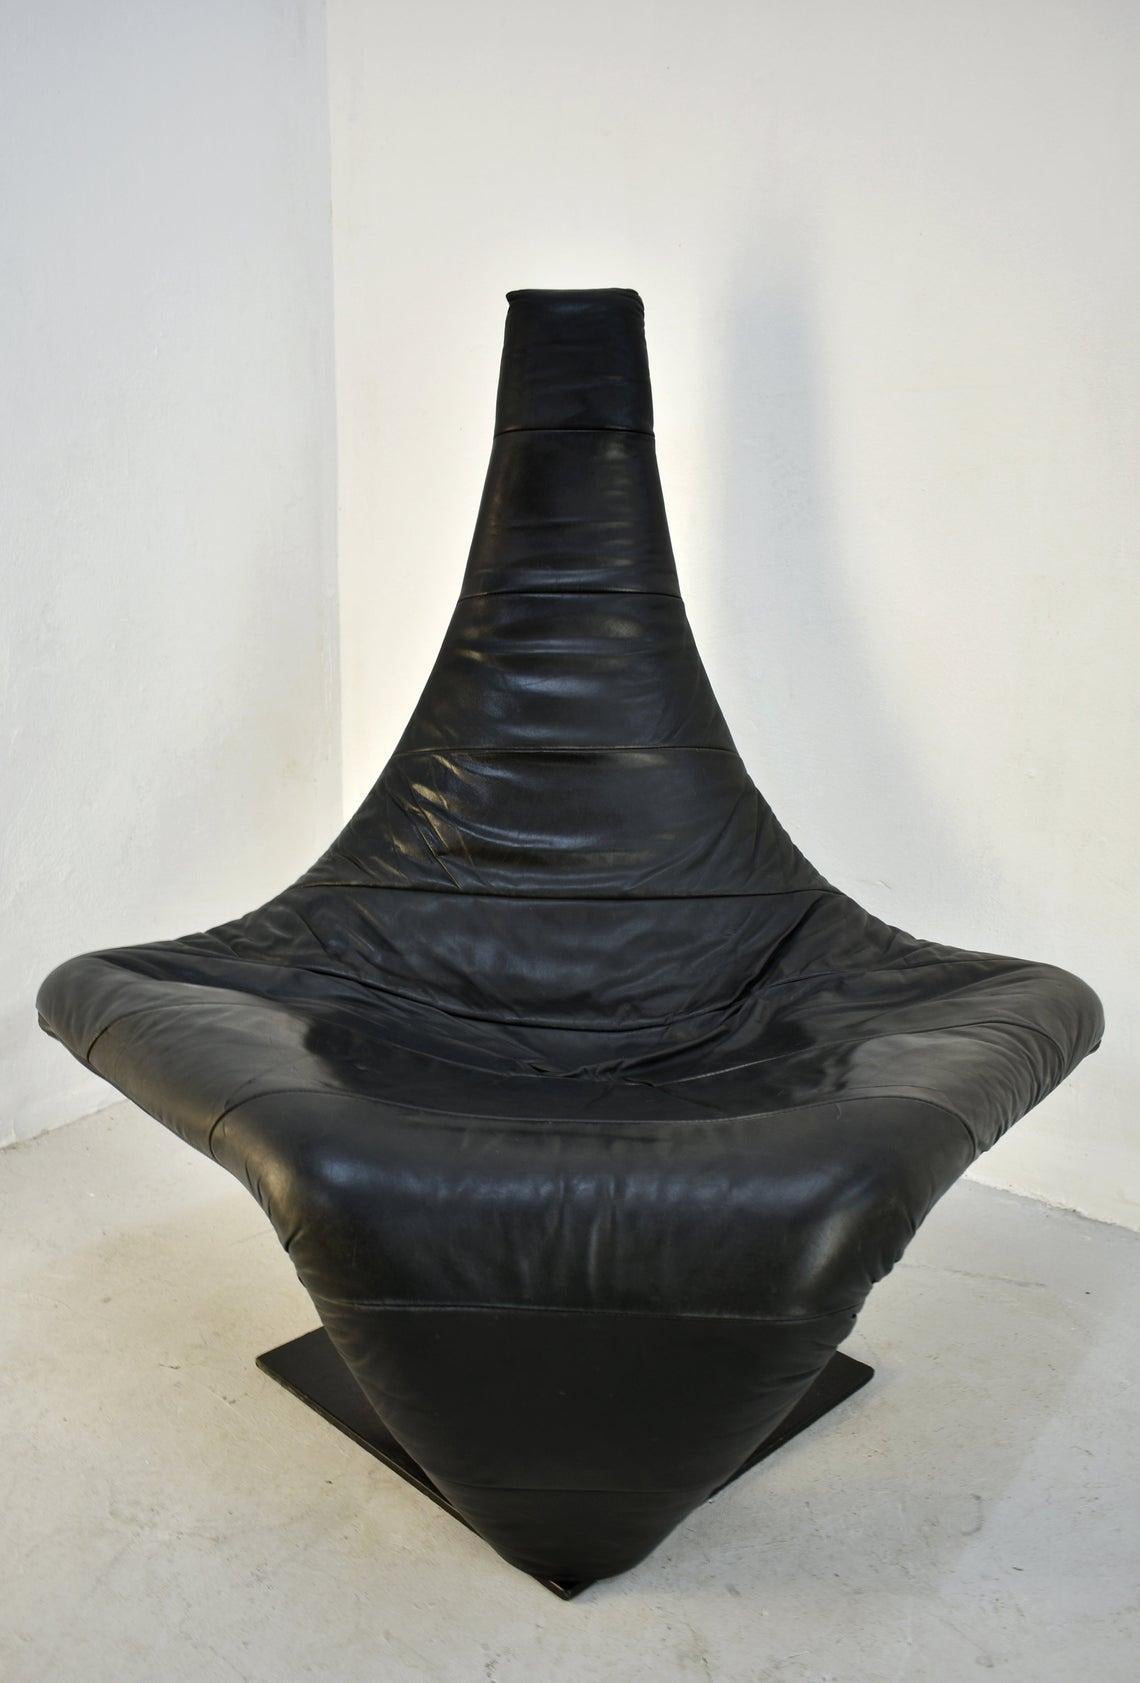 Lounge Chair in Black Leather, Model 'Turner' by Jack Crebolder for Harvink 2